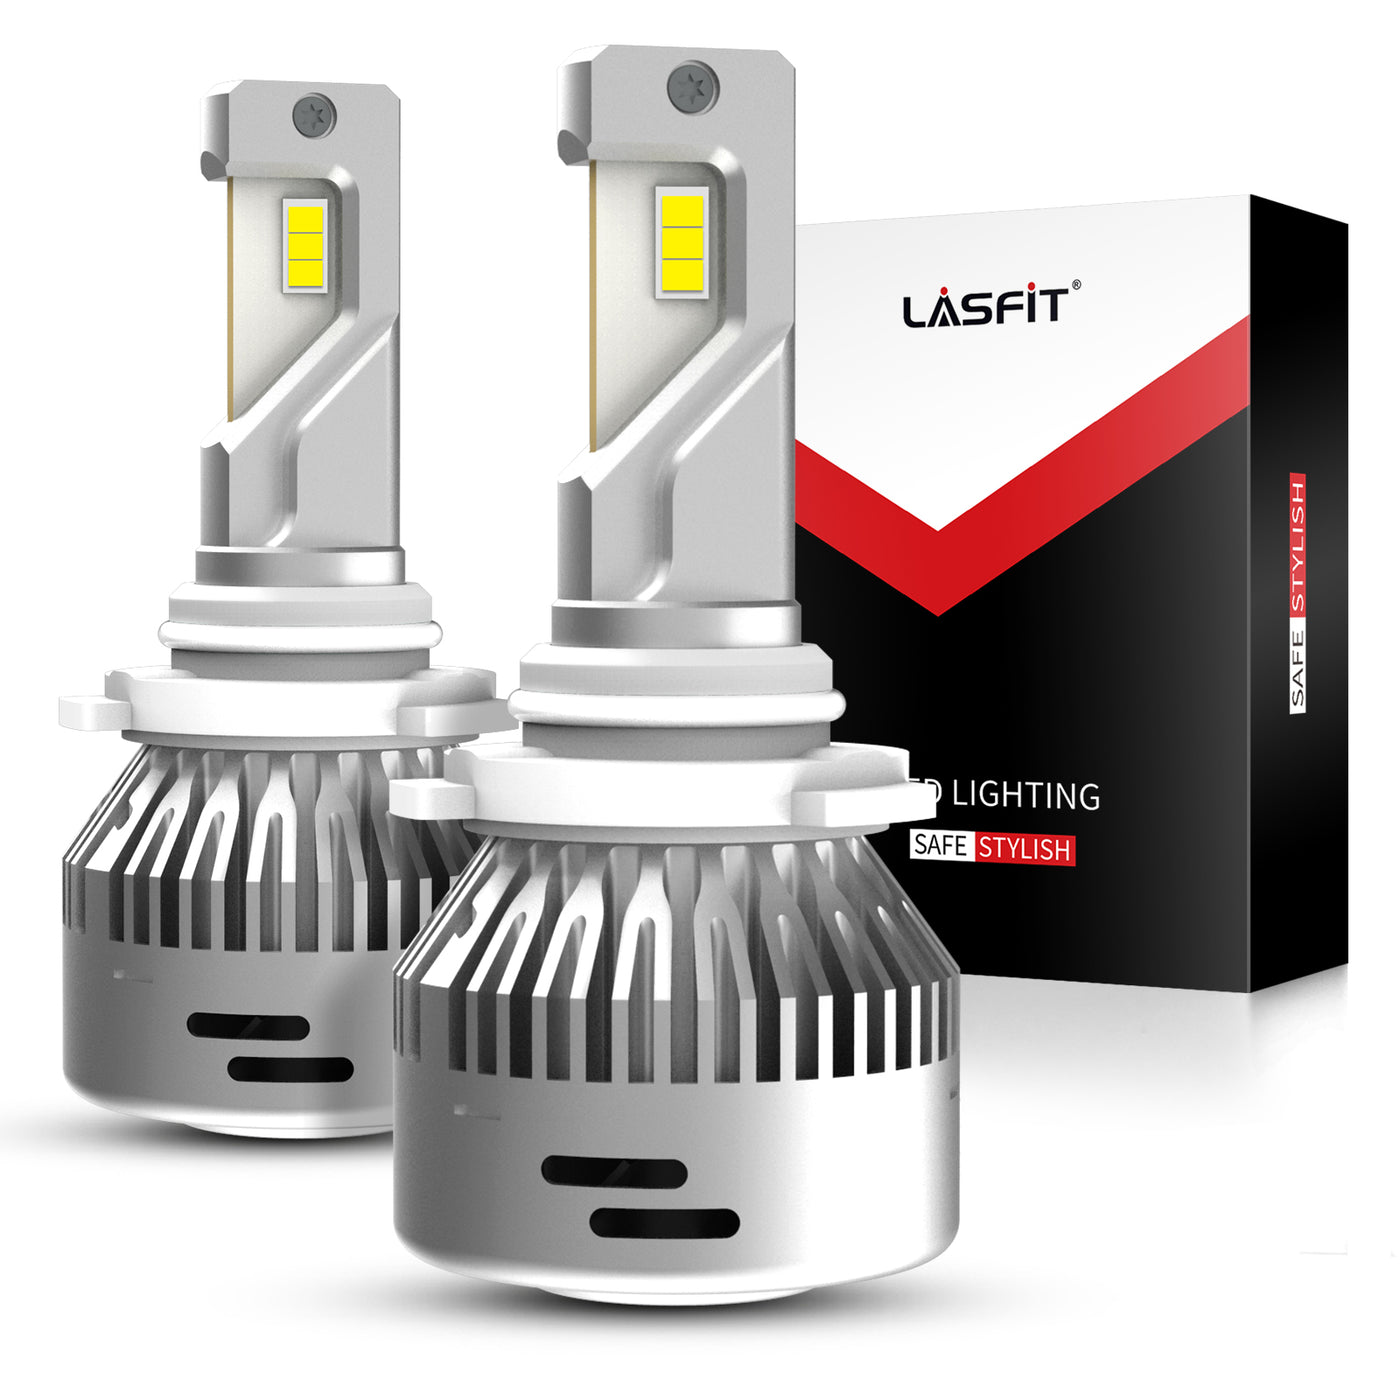 Tebru 1 Pair H7 LED Headlight Adapter Retainer Holder for KIA K4 K5 Sorento  Veloster Santa Fe, Headlight Adapter,H7 LED Adapter 